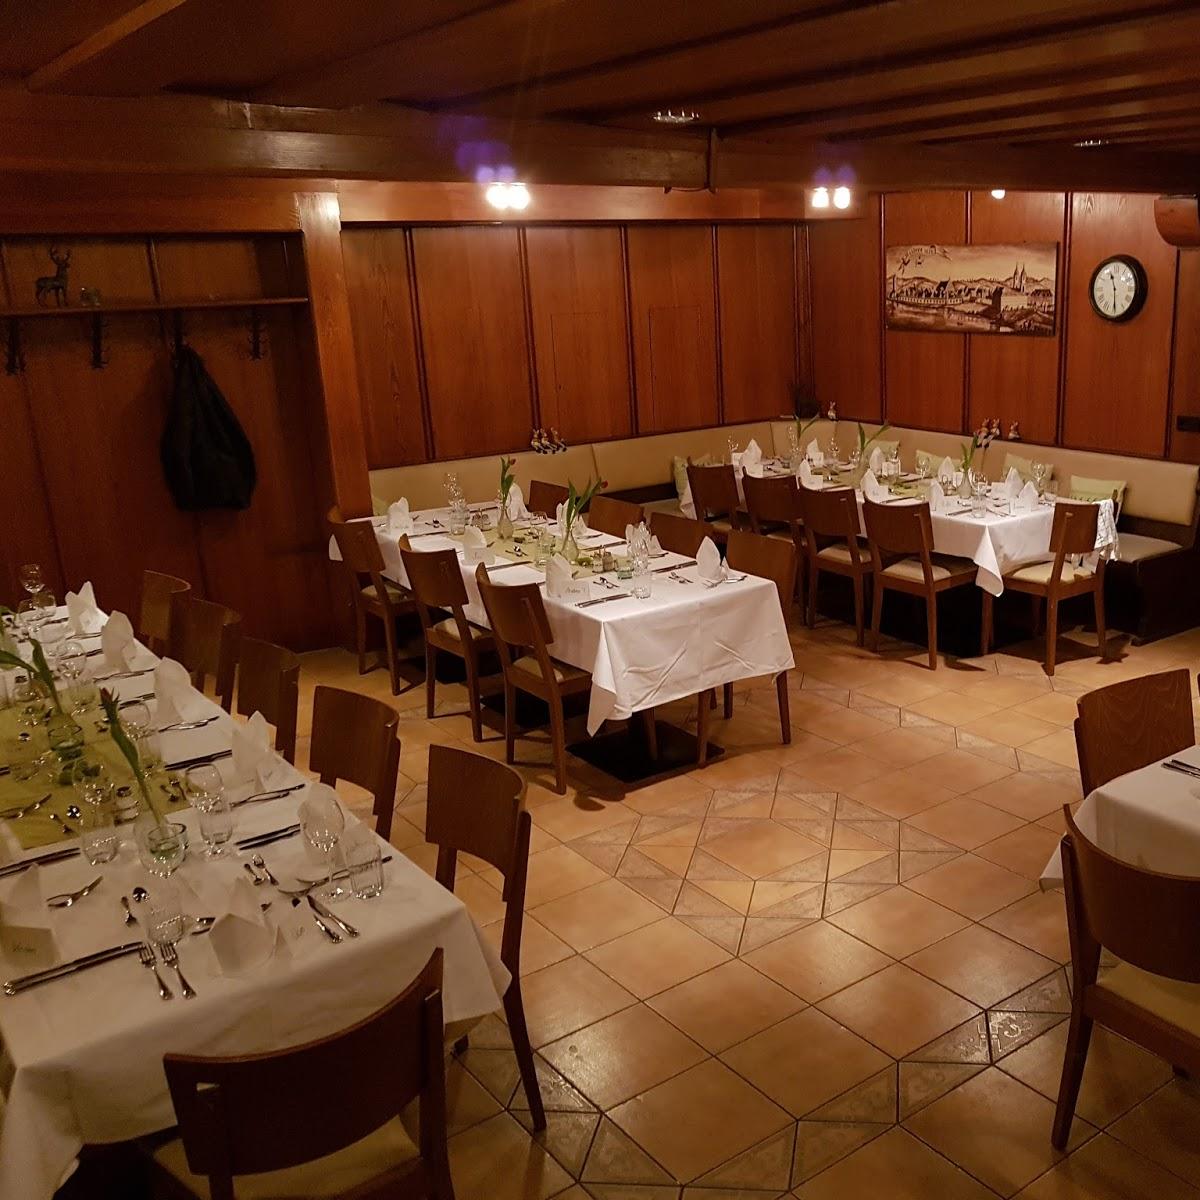 Restaurant "Gasthaus Zum Hirschen" in  Waldsee